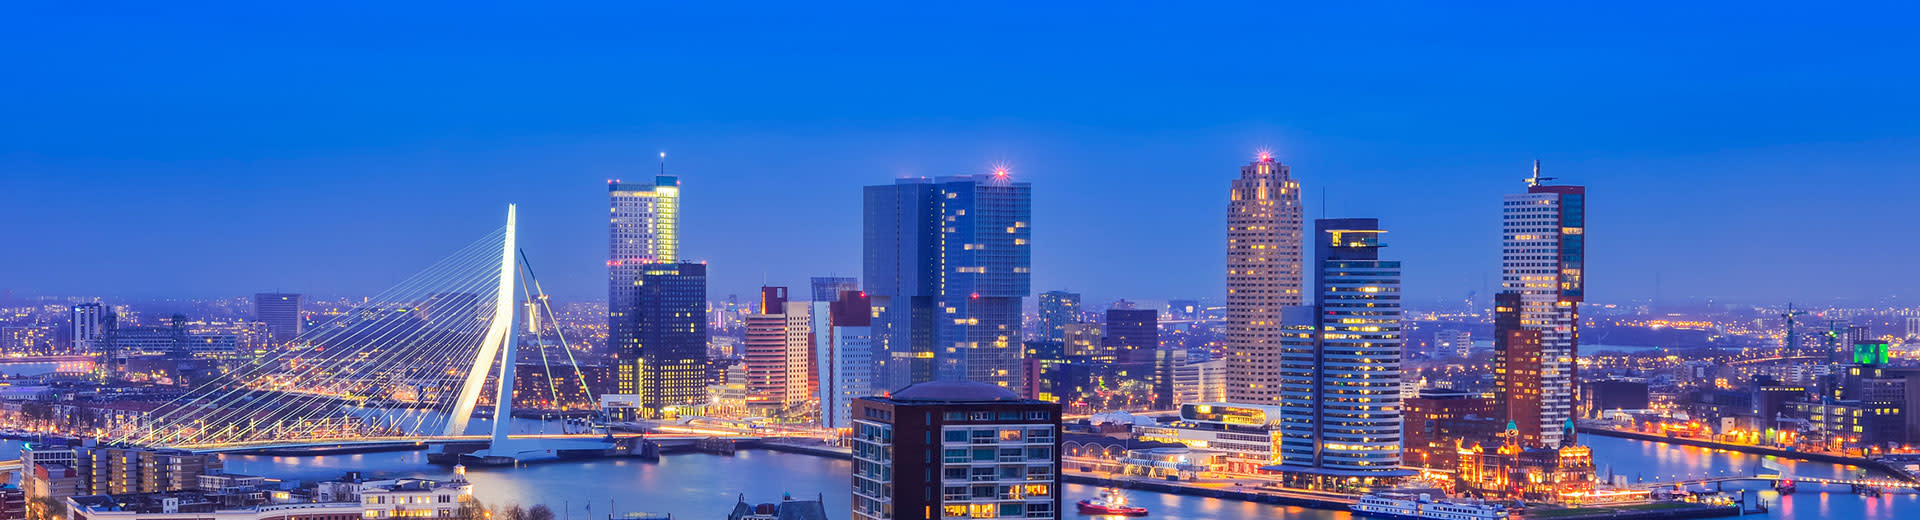 Die Rotterdam Skyline im Dursk Licht gegen einen Indigo Himmel.	